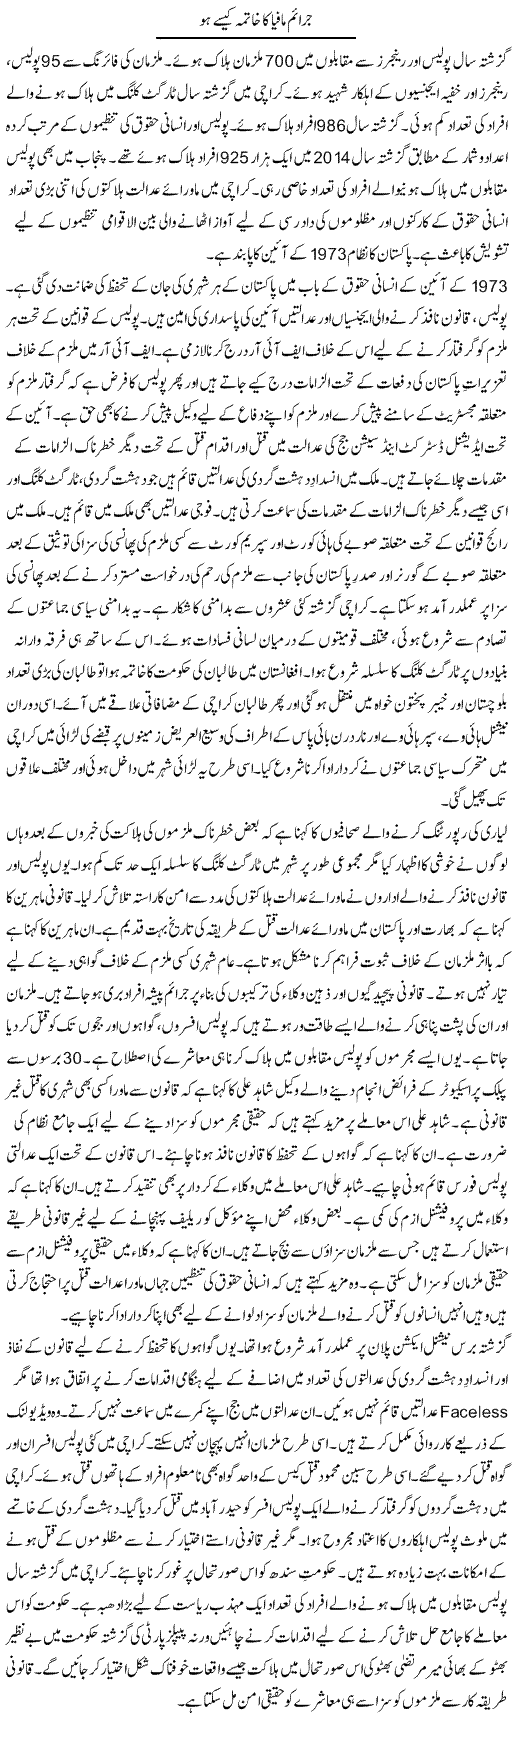 Jaraim mafia ka khatma kese ho | Tausif Ahmad Khan | Daily Urdu Columns